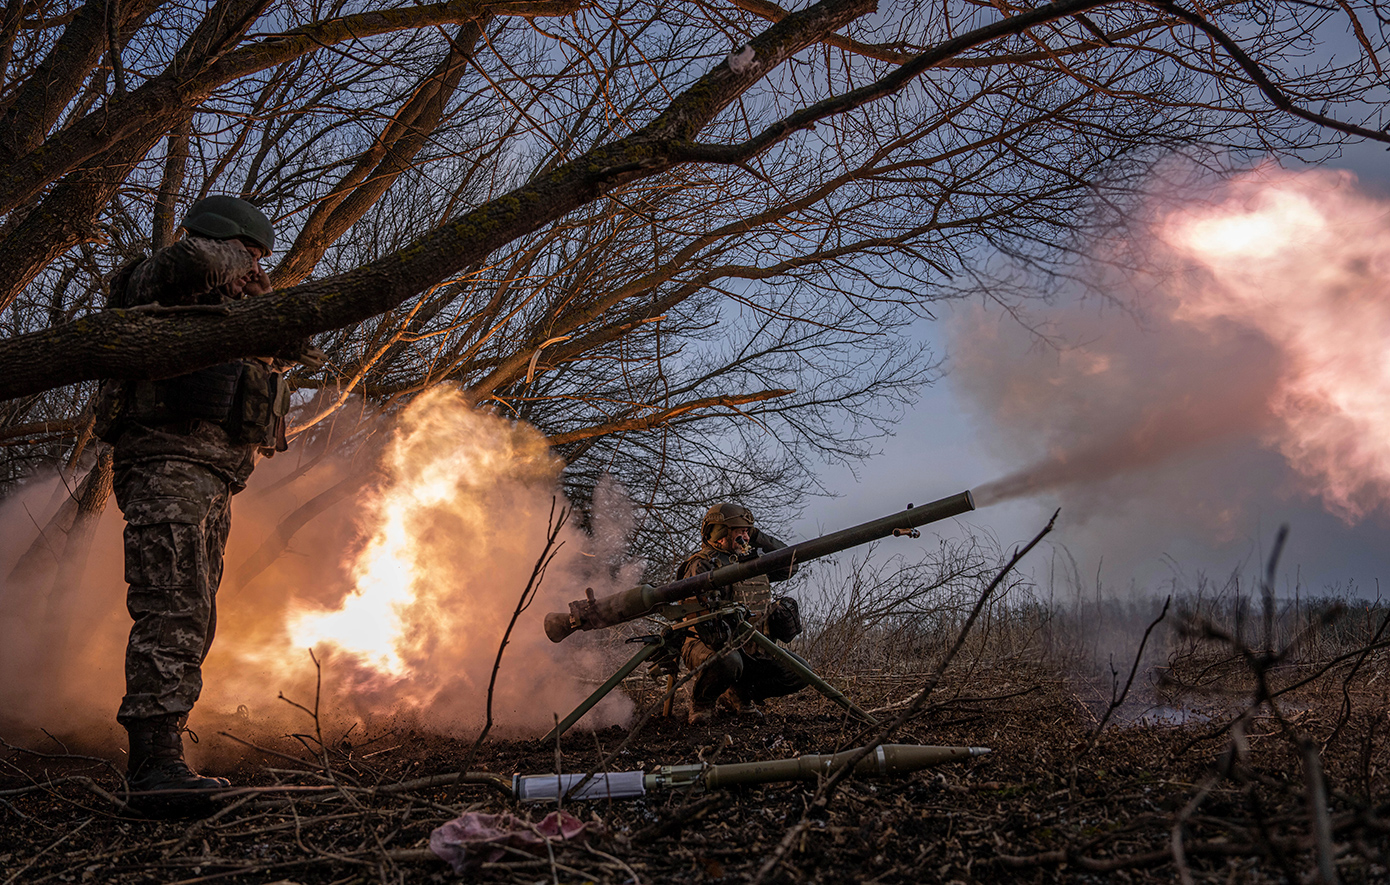 Με γοργούς ρυθμούς ετοιμάζουν οι ΗΠΑ την αποστολή όπλων στην Ουκρανία